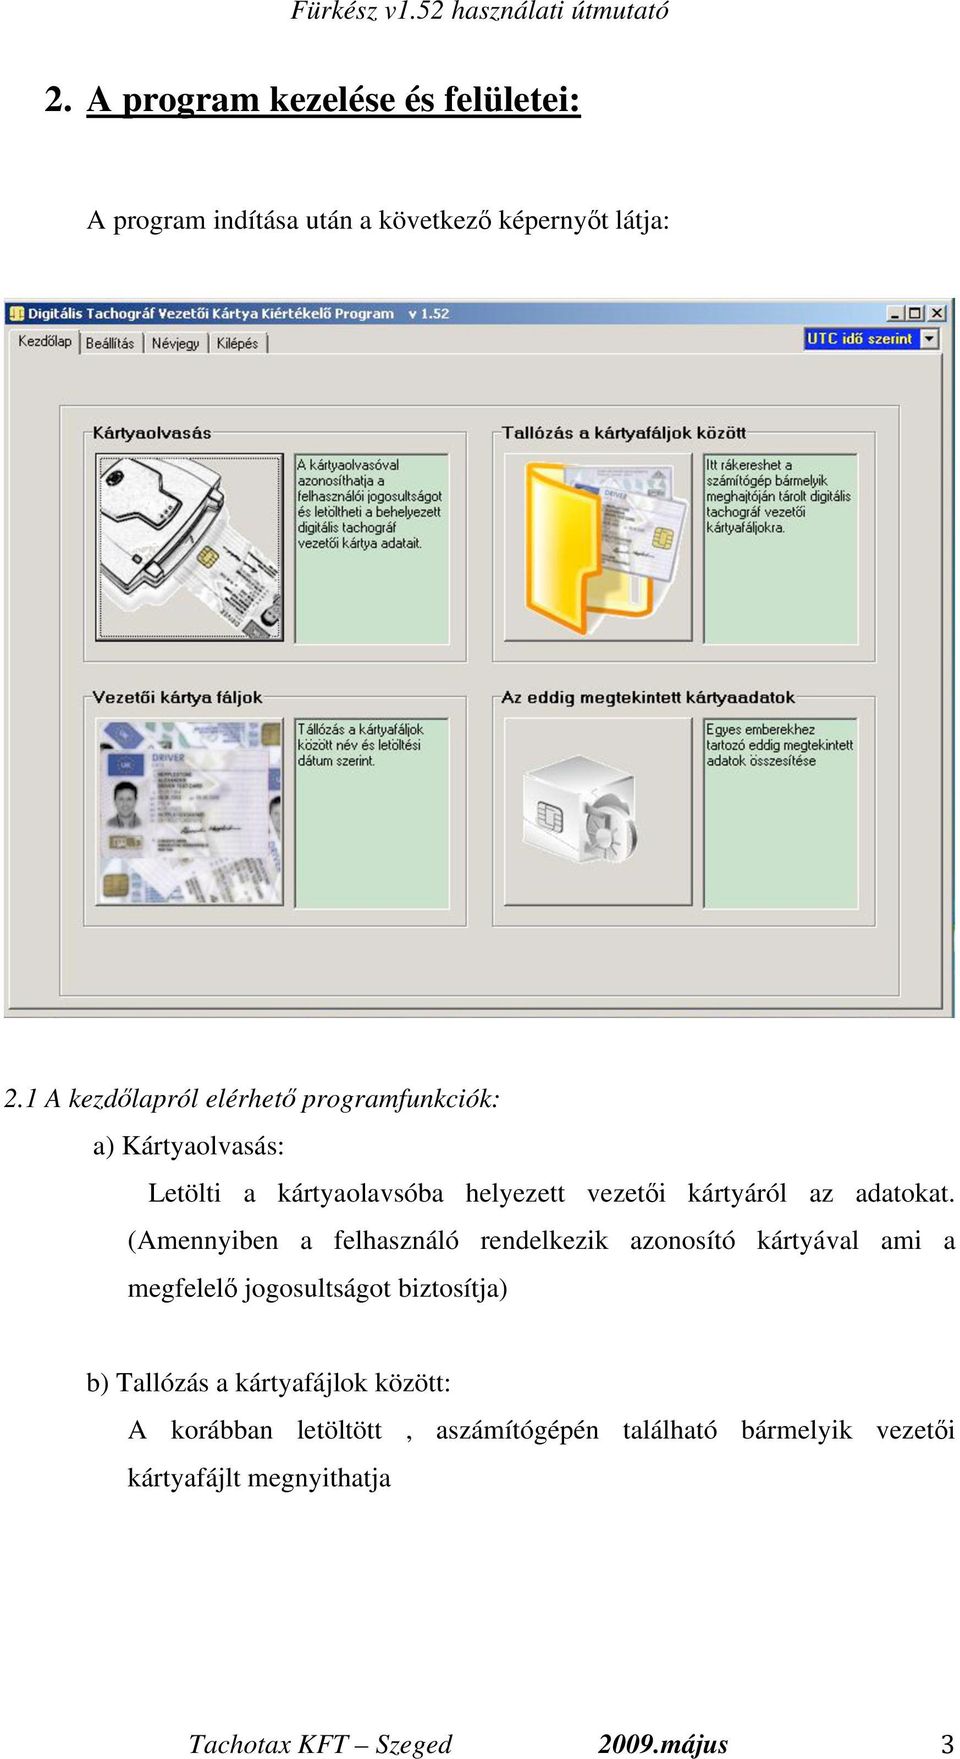 FÜRKÉSZ. Digitális tachográf, és gépkocsivezet i chipkártya kielemz  program. Használati útmutató - PDF Ingyenes letöltés